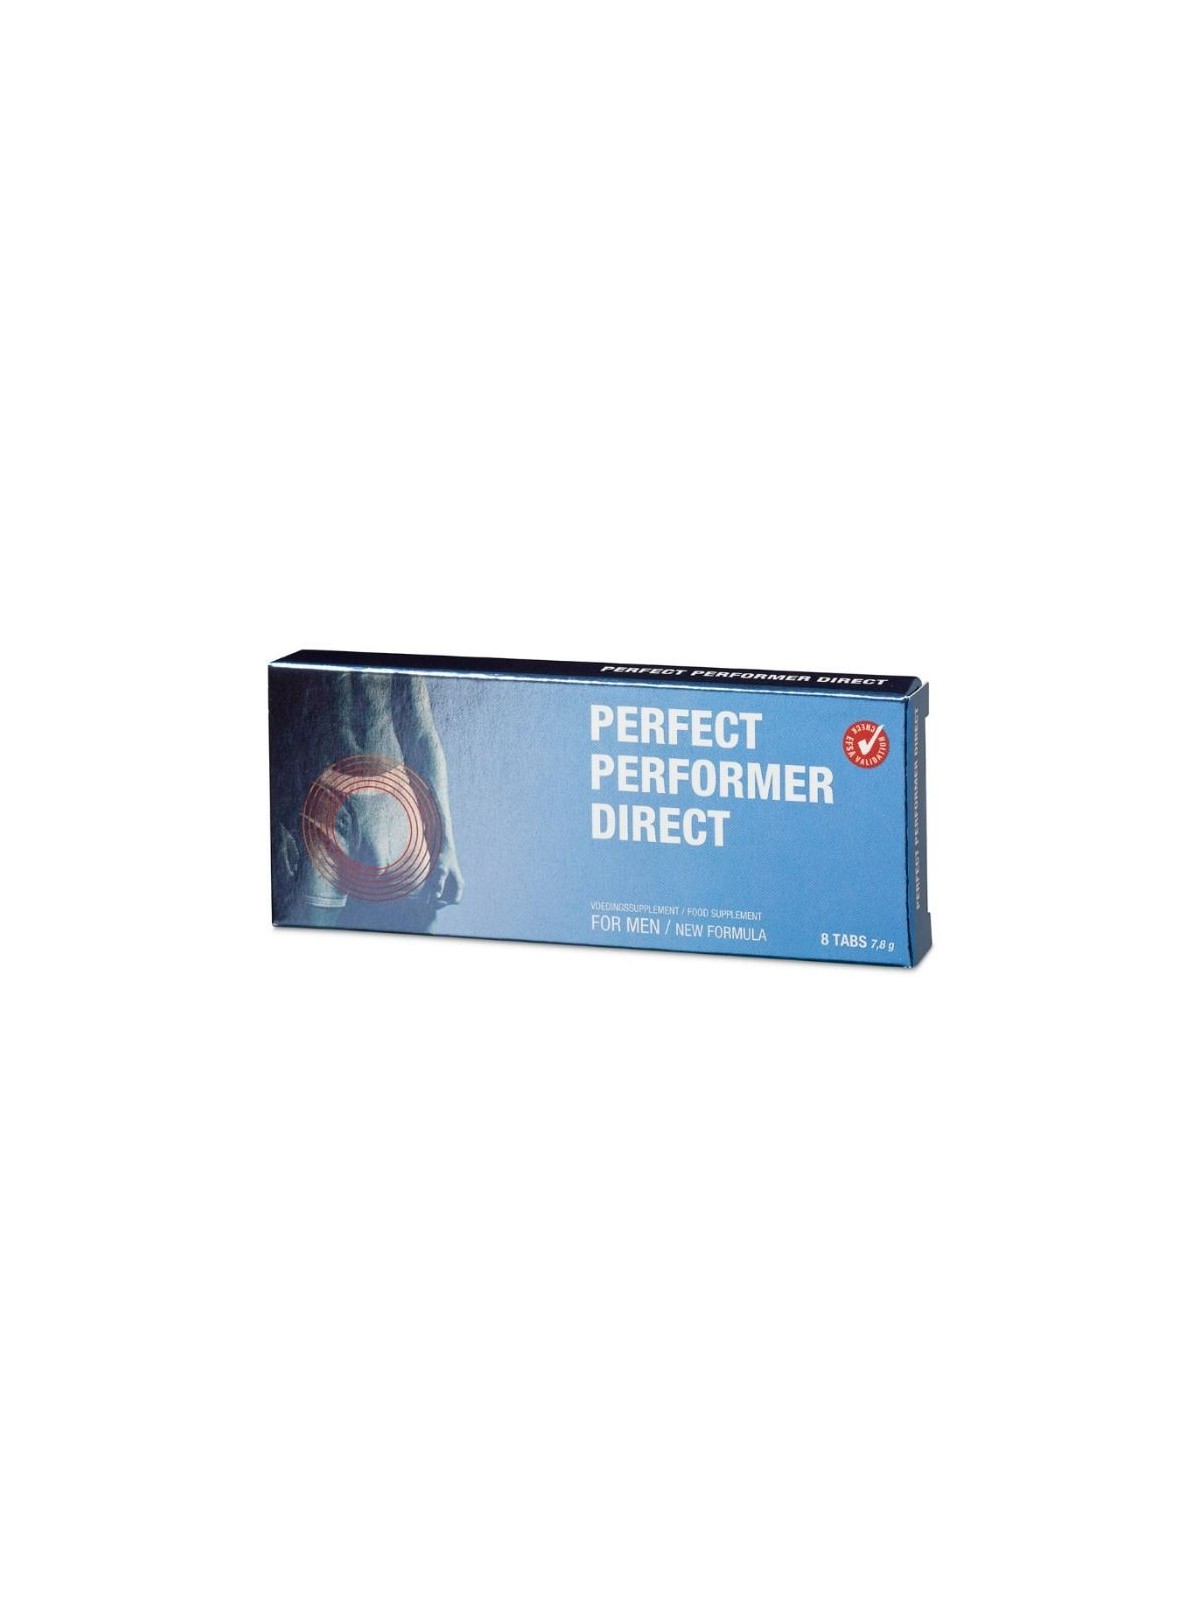 Perfect Performer Mas Energía - Comprar Potenciador erección Cobeco - Potenciadores de erección (1)